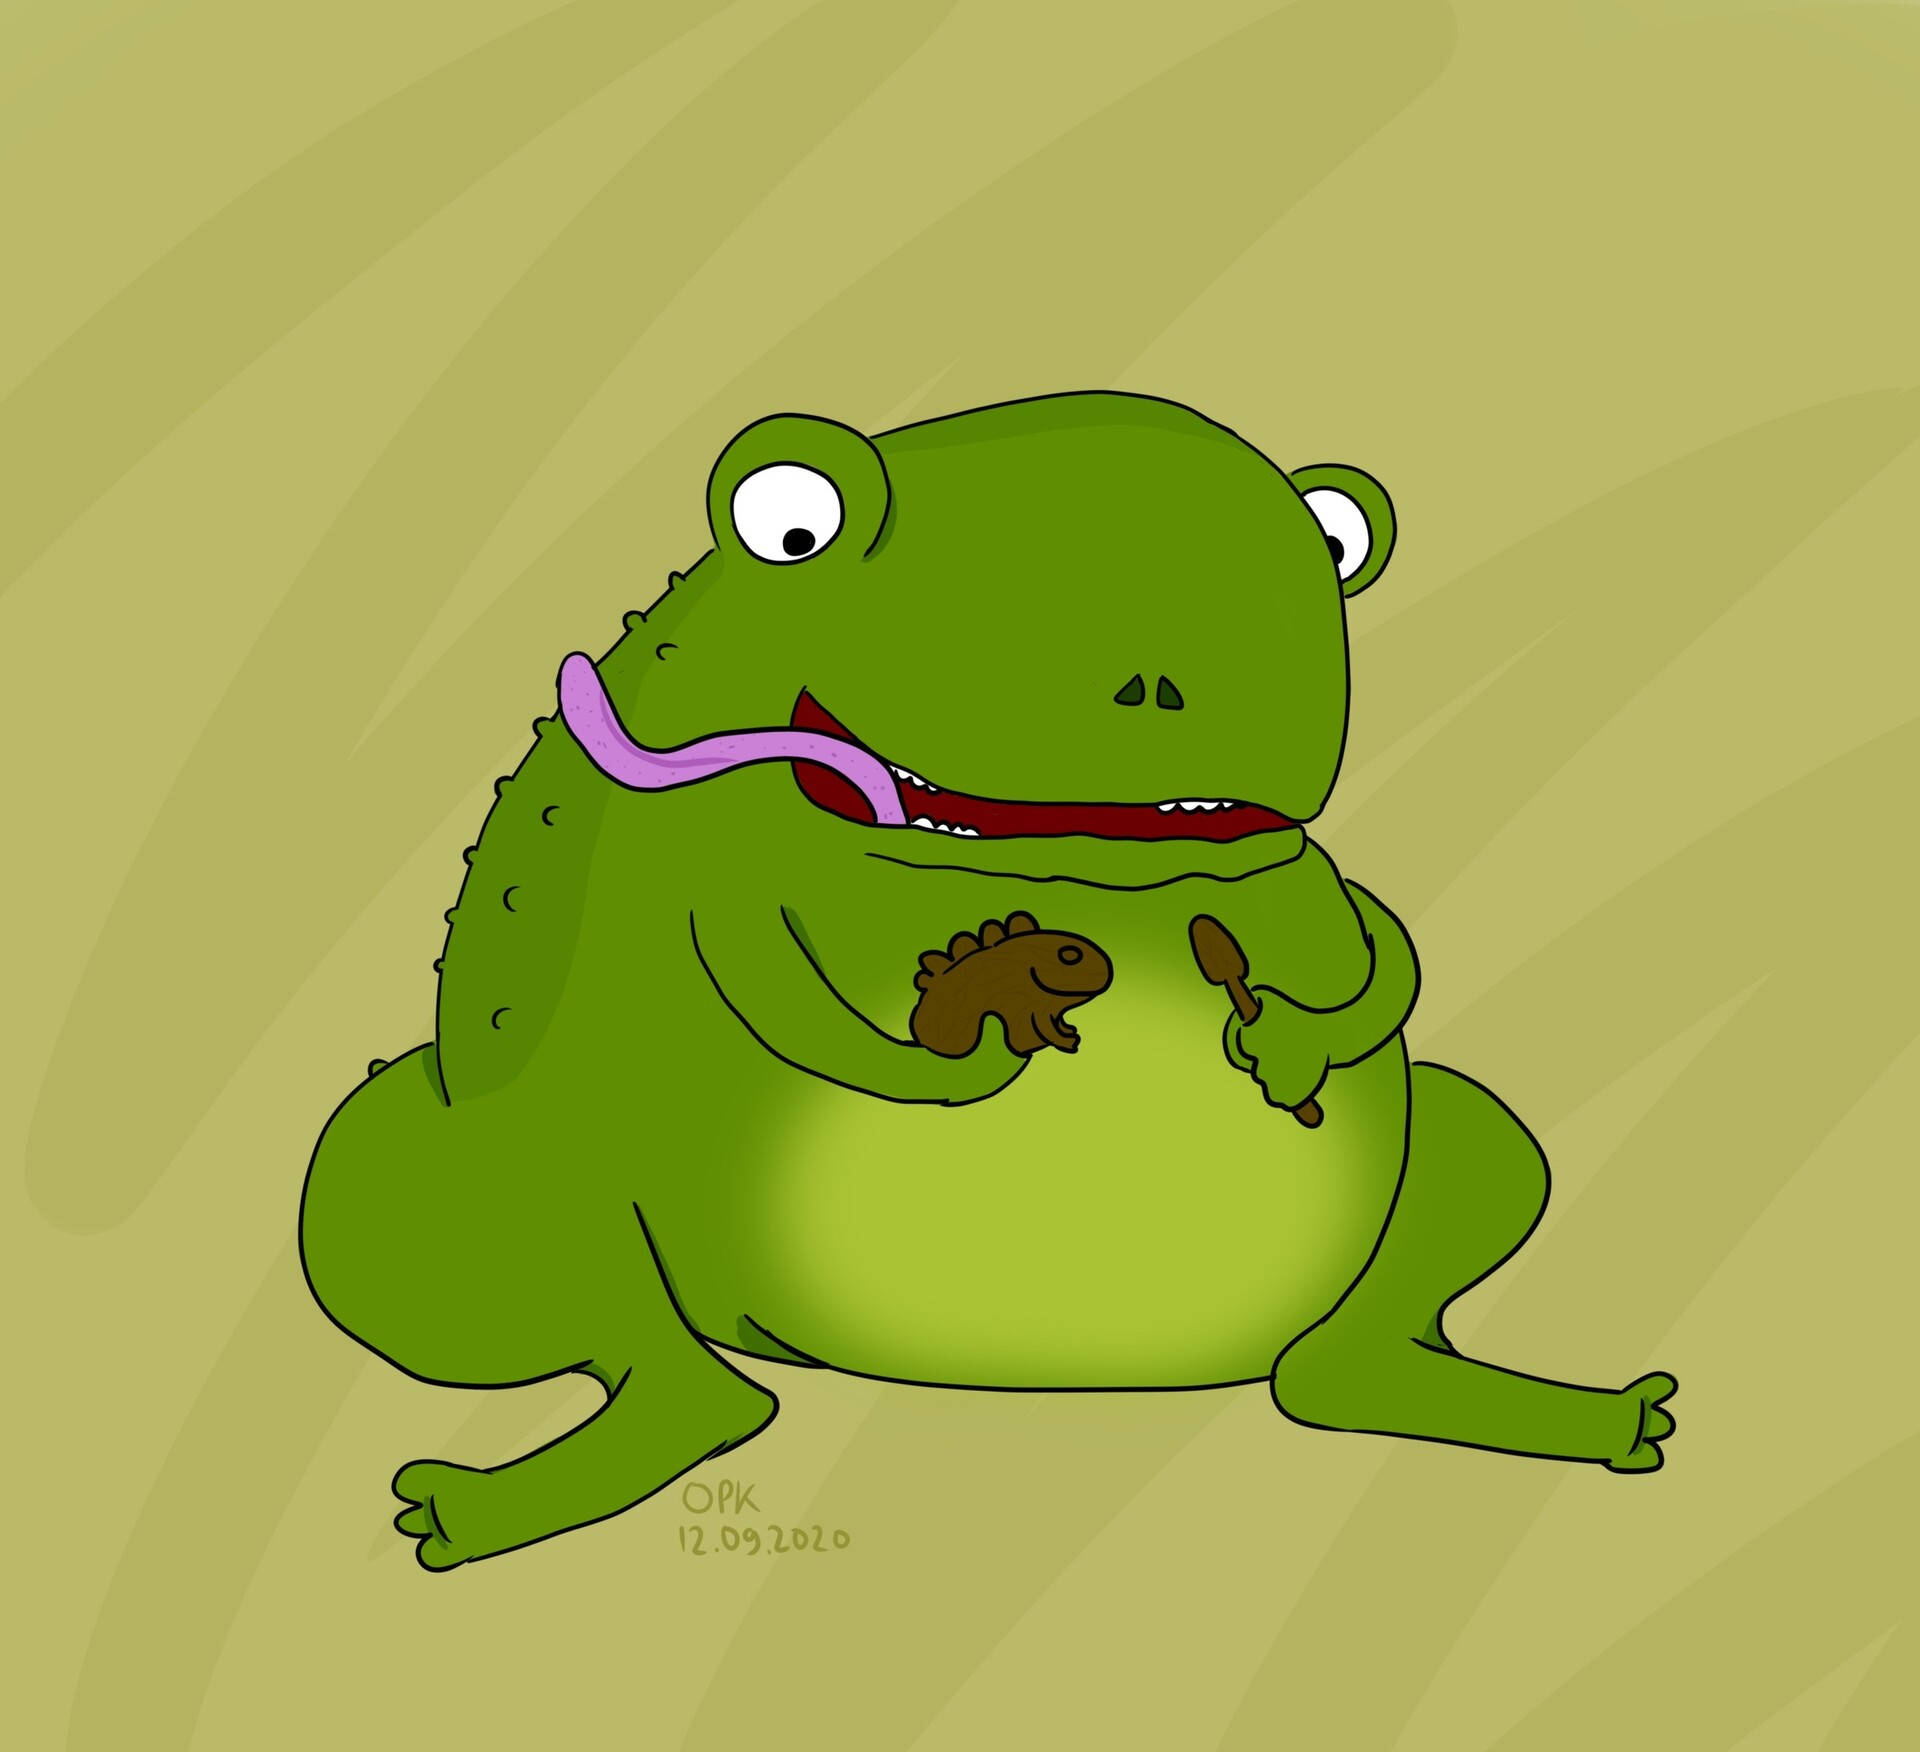 ArtStation - Frog and guiro